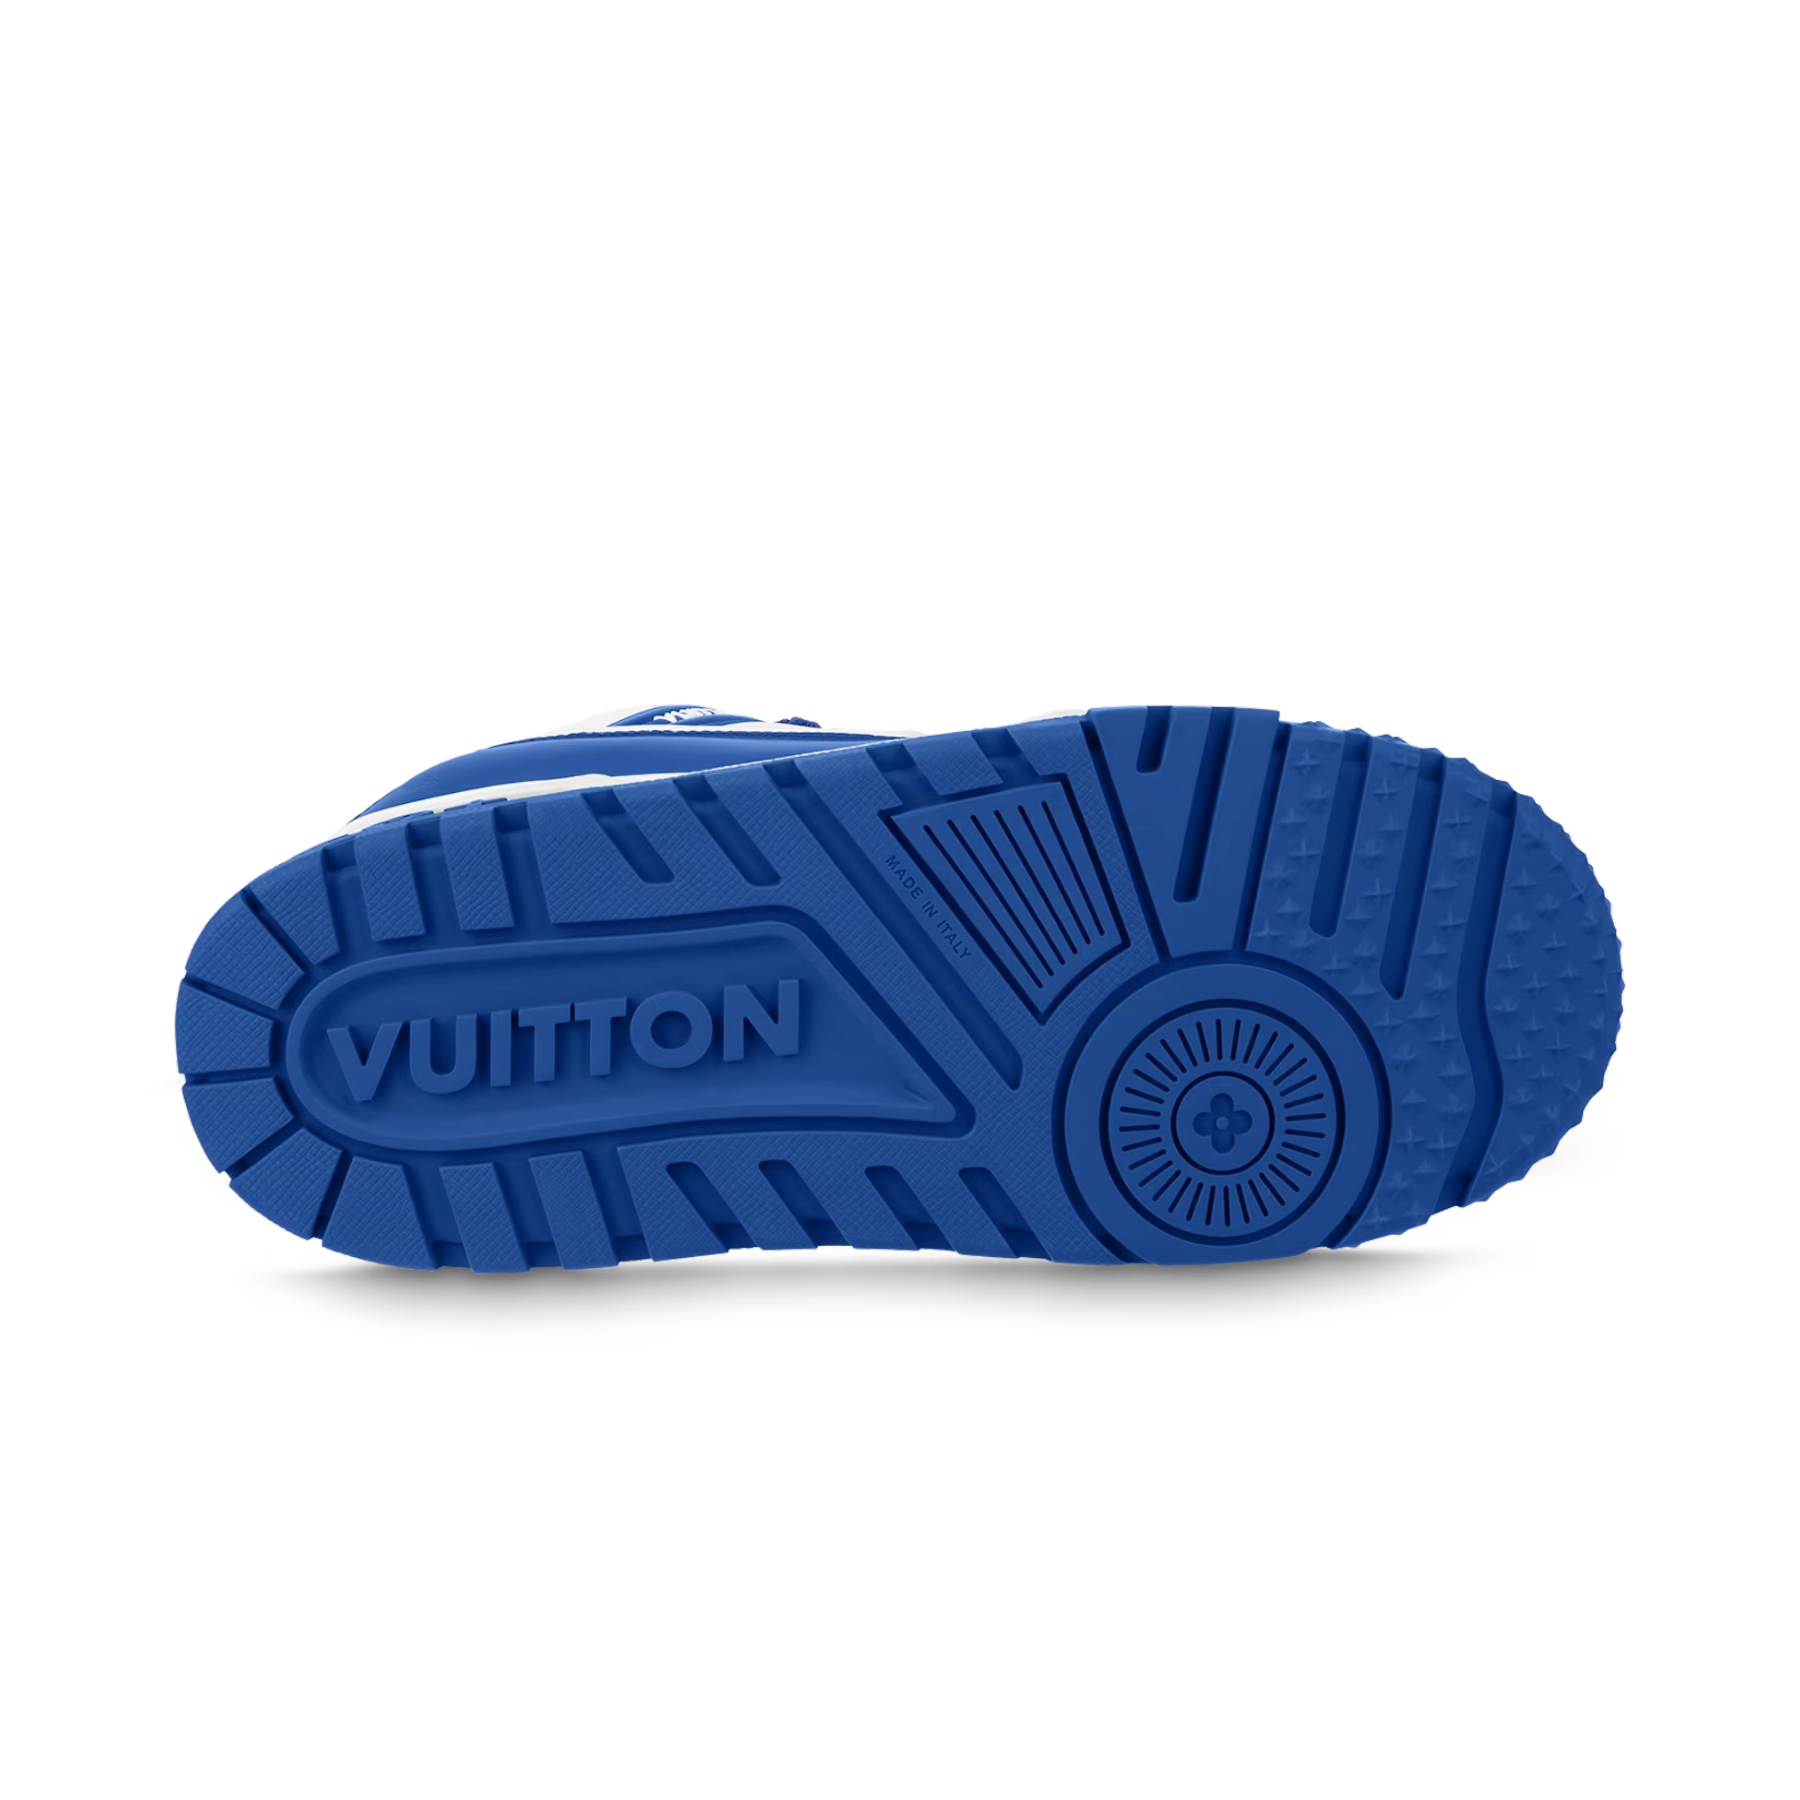 Louis Vuitton LV Trainer Maxi Sneaker Blue. Size 08.0